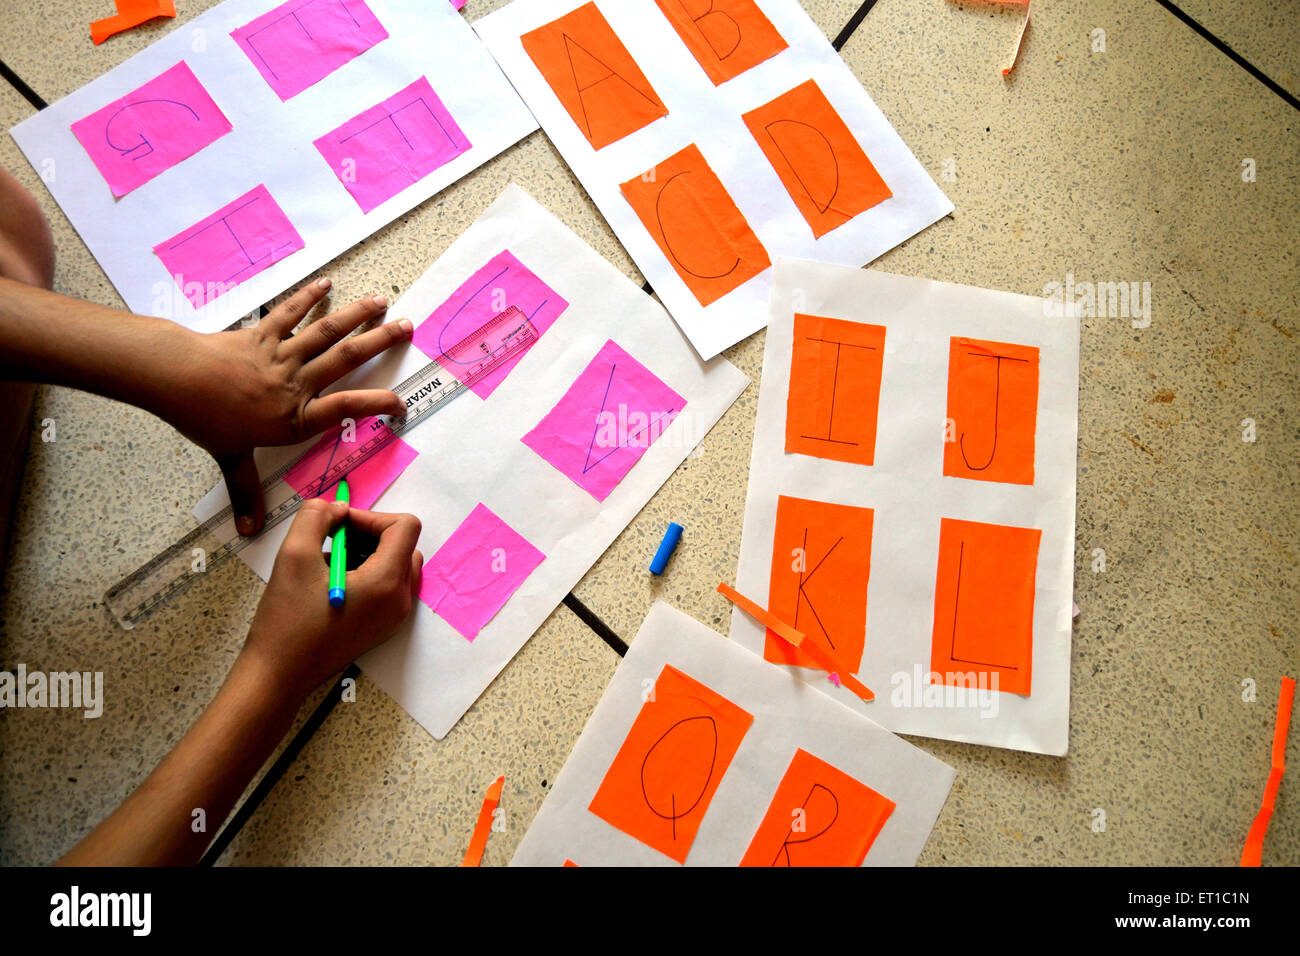 Mädchen Zeichnung ABCD auf Farbe Diagramm Herr #704 Jodhpur Rajasthan Indien Asien Stockfoto